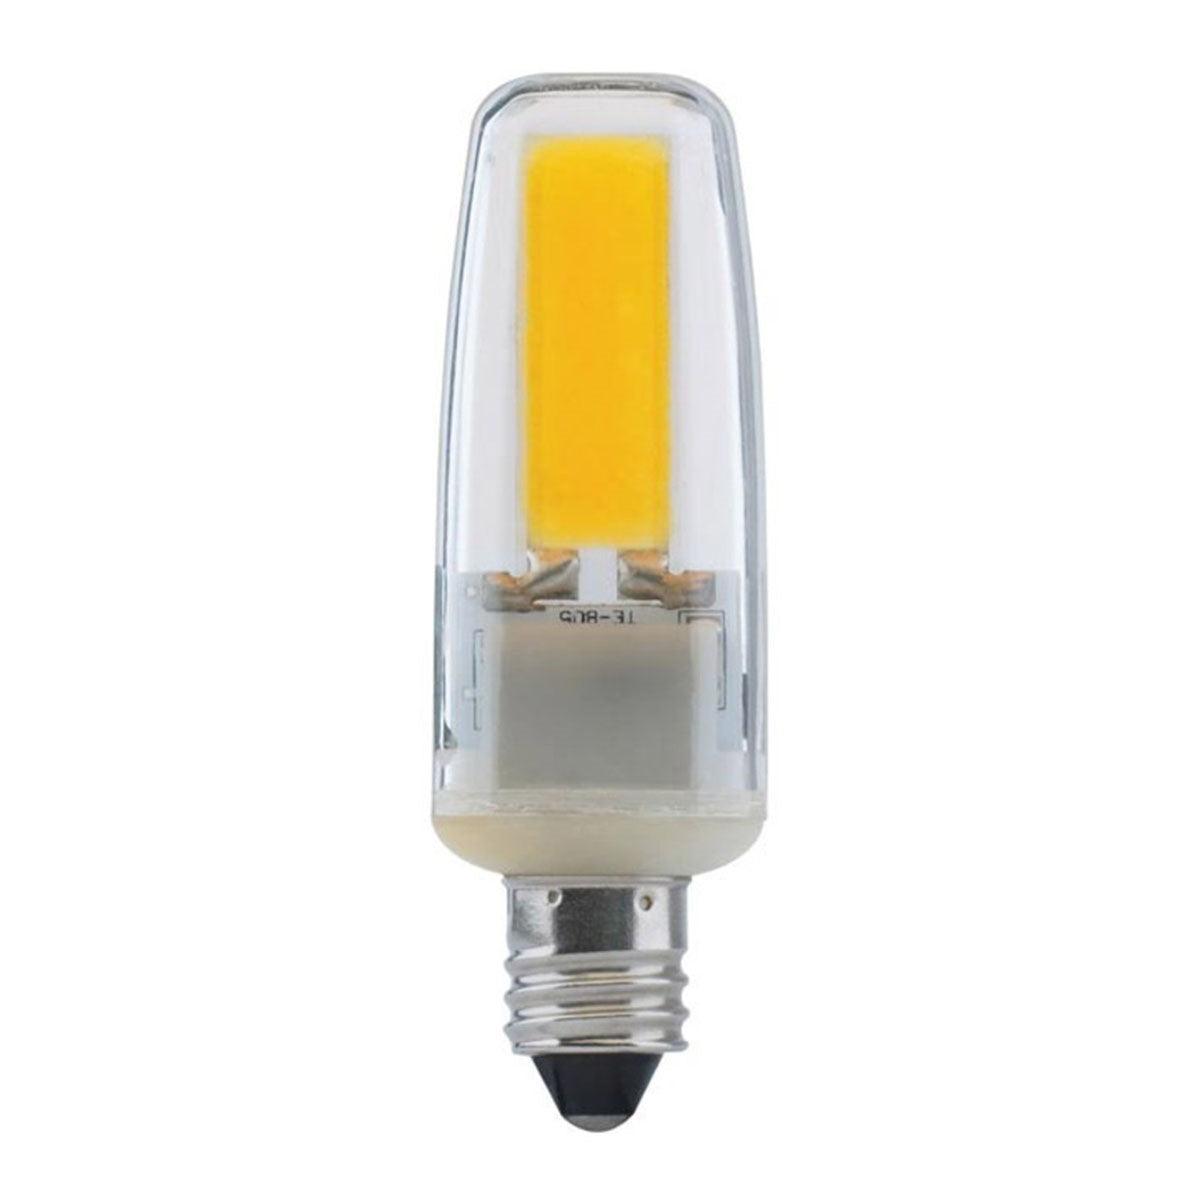 T4 Mini LED Bulb, 4 Watt, 480 Lumens, 5000K, E11 Mini-Candelabra Base, Clear Finish